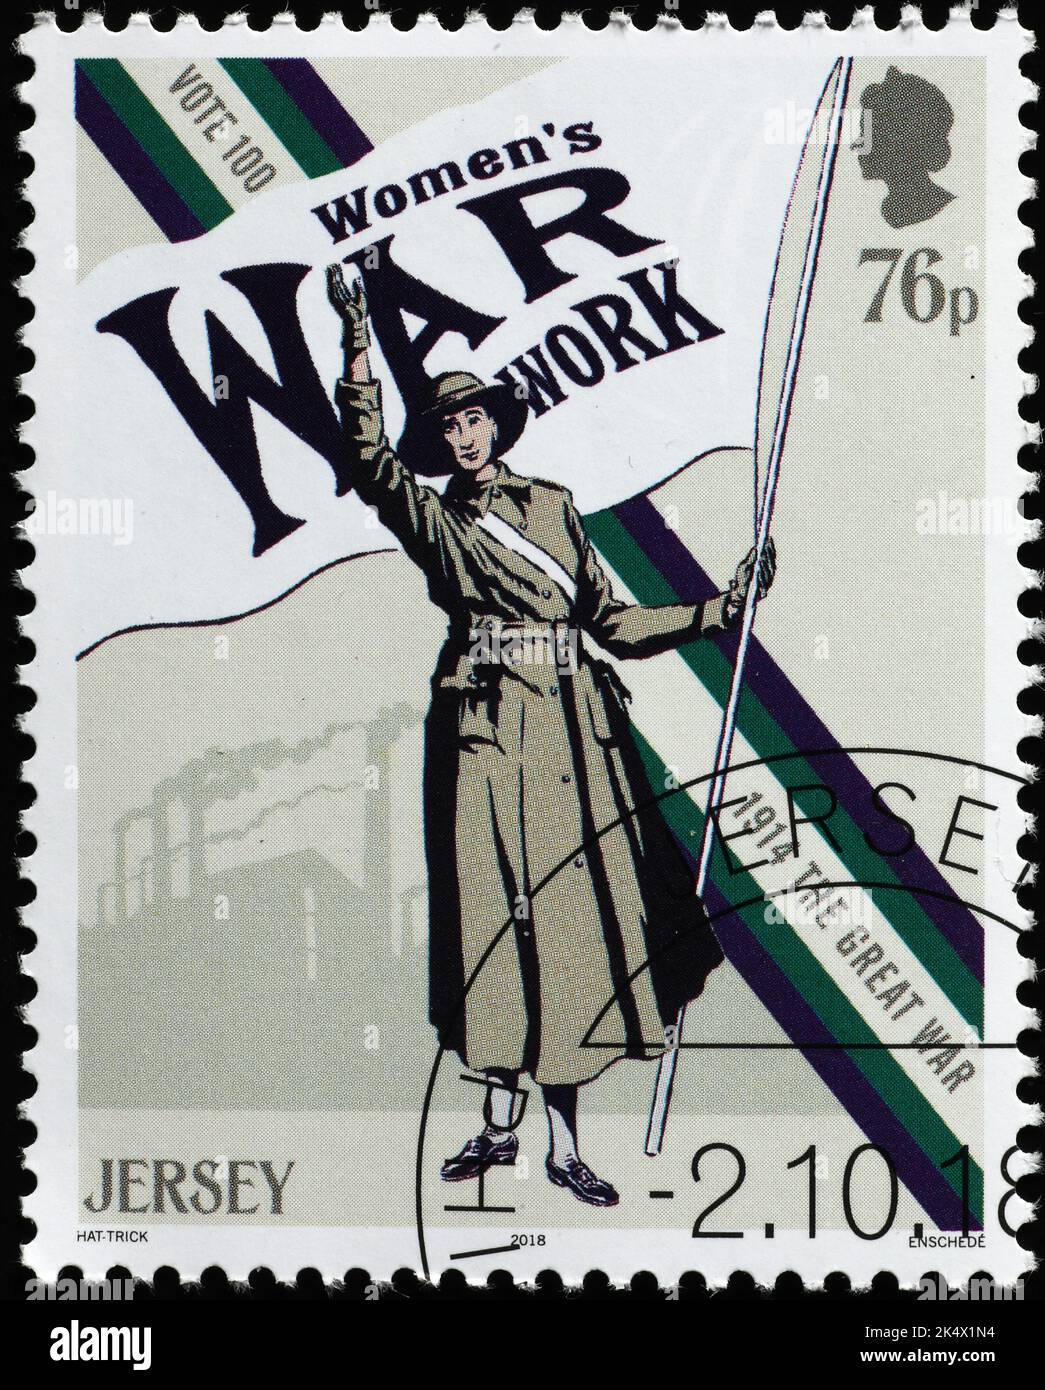 El trabajo de las mujeres en la guerra se celebró con sello de Jersey Foto de stock